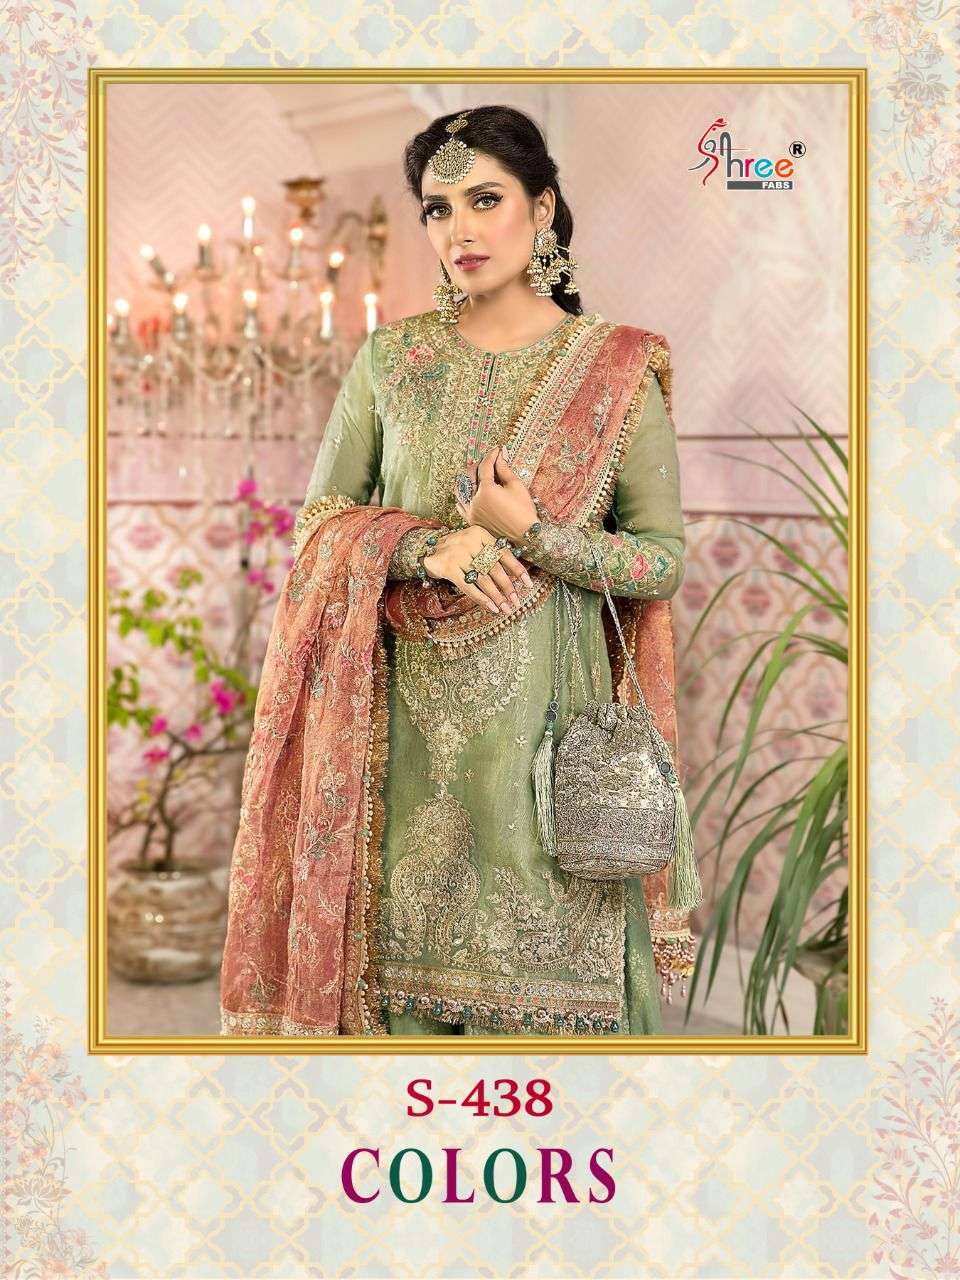 Shree fabs S 438 Colors Designer Pakistani Suit Catalog Wholesaler